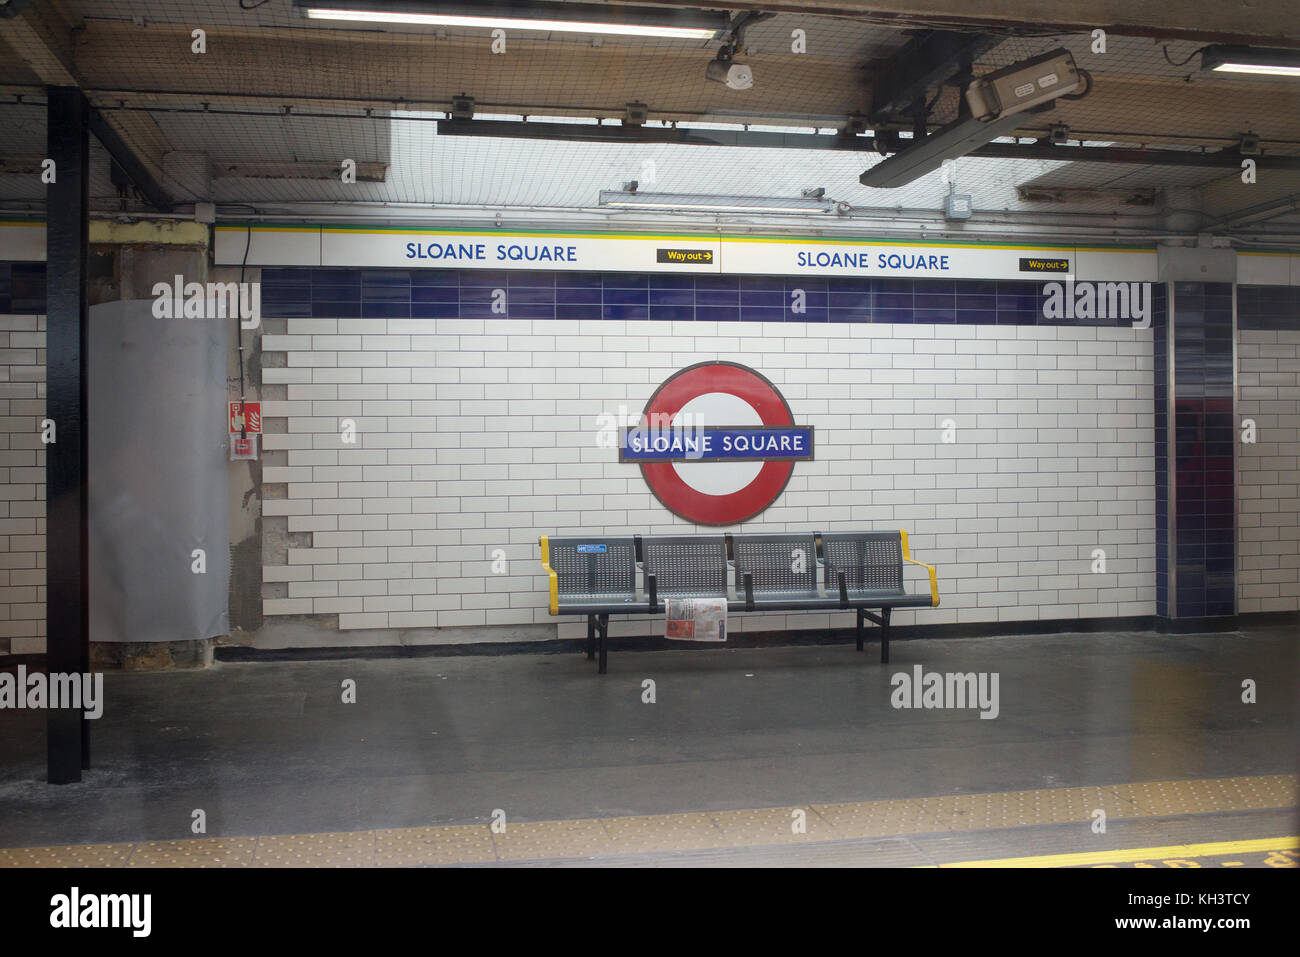 Sloane Square station on the London Underground Stock Photo